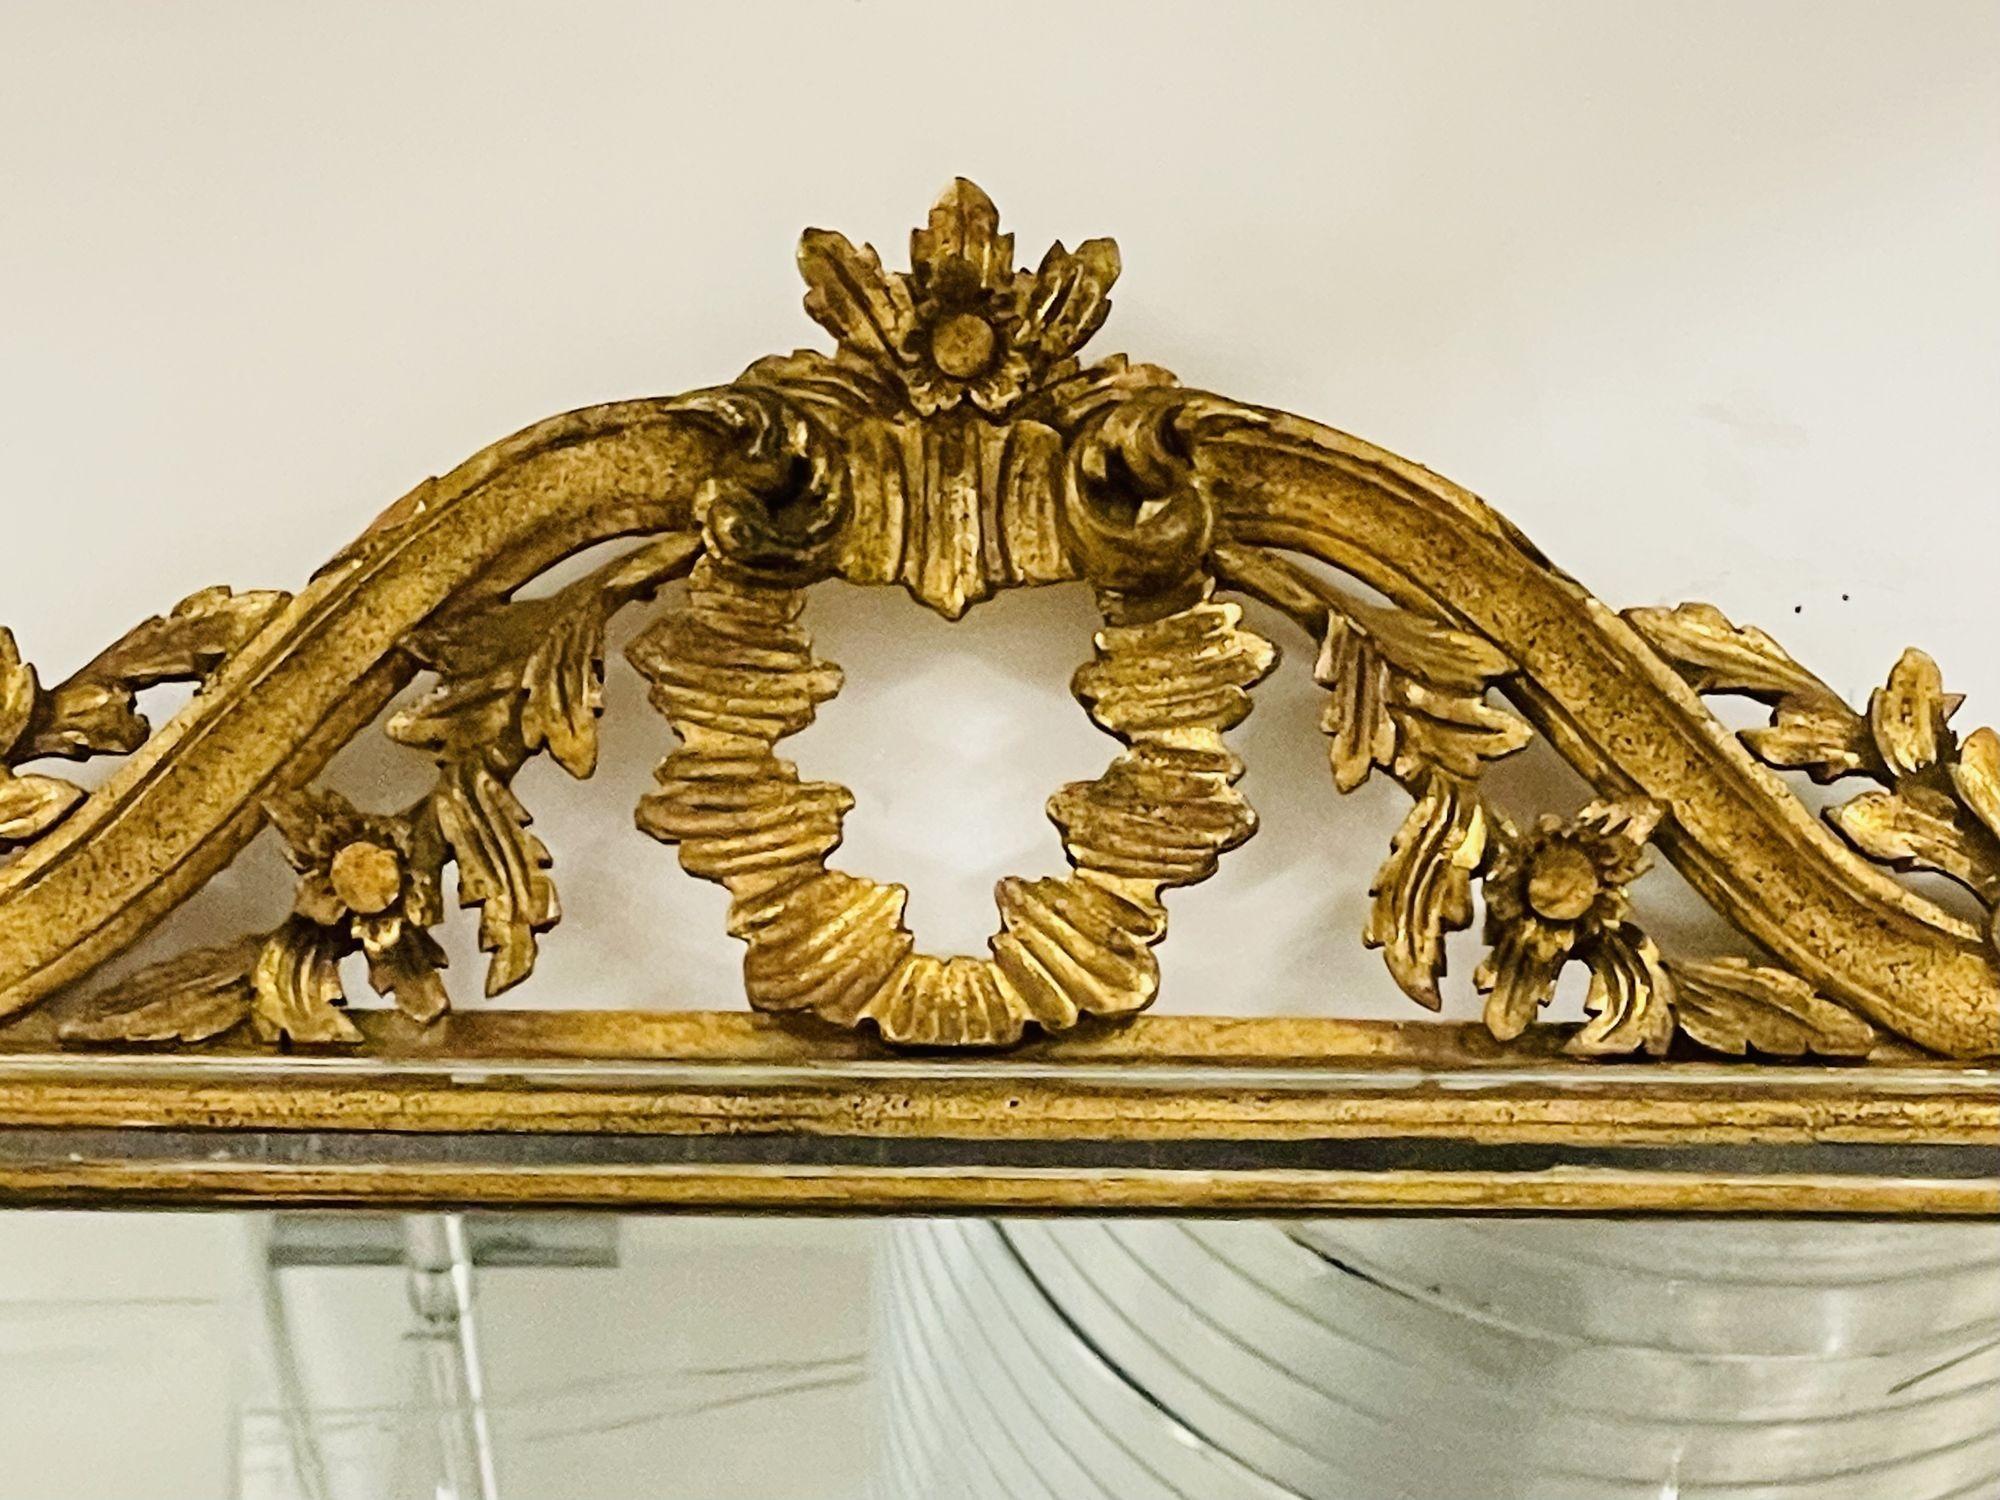 Italienischer Wand-, Konsolen- oder Pfeilerspiegel. 1930s. Gold vergoldet, geschnitzt.
 
Ein zentraler Spiegel, flankiert von vergoldeten Holzseiten mit Spiegeleinlage. Das Ganze auf einem fein geschnitzten Rahmen. 
 
 
ZXX